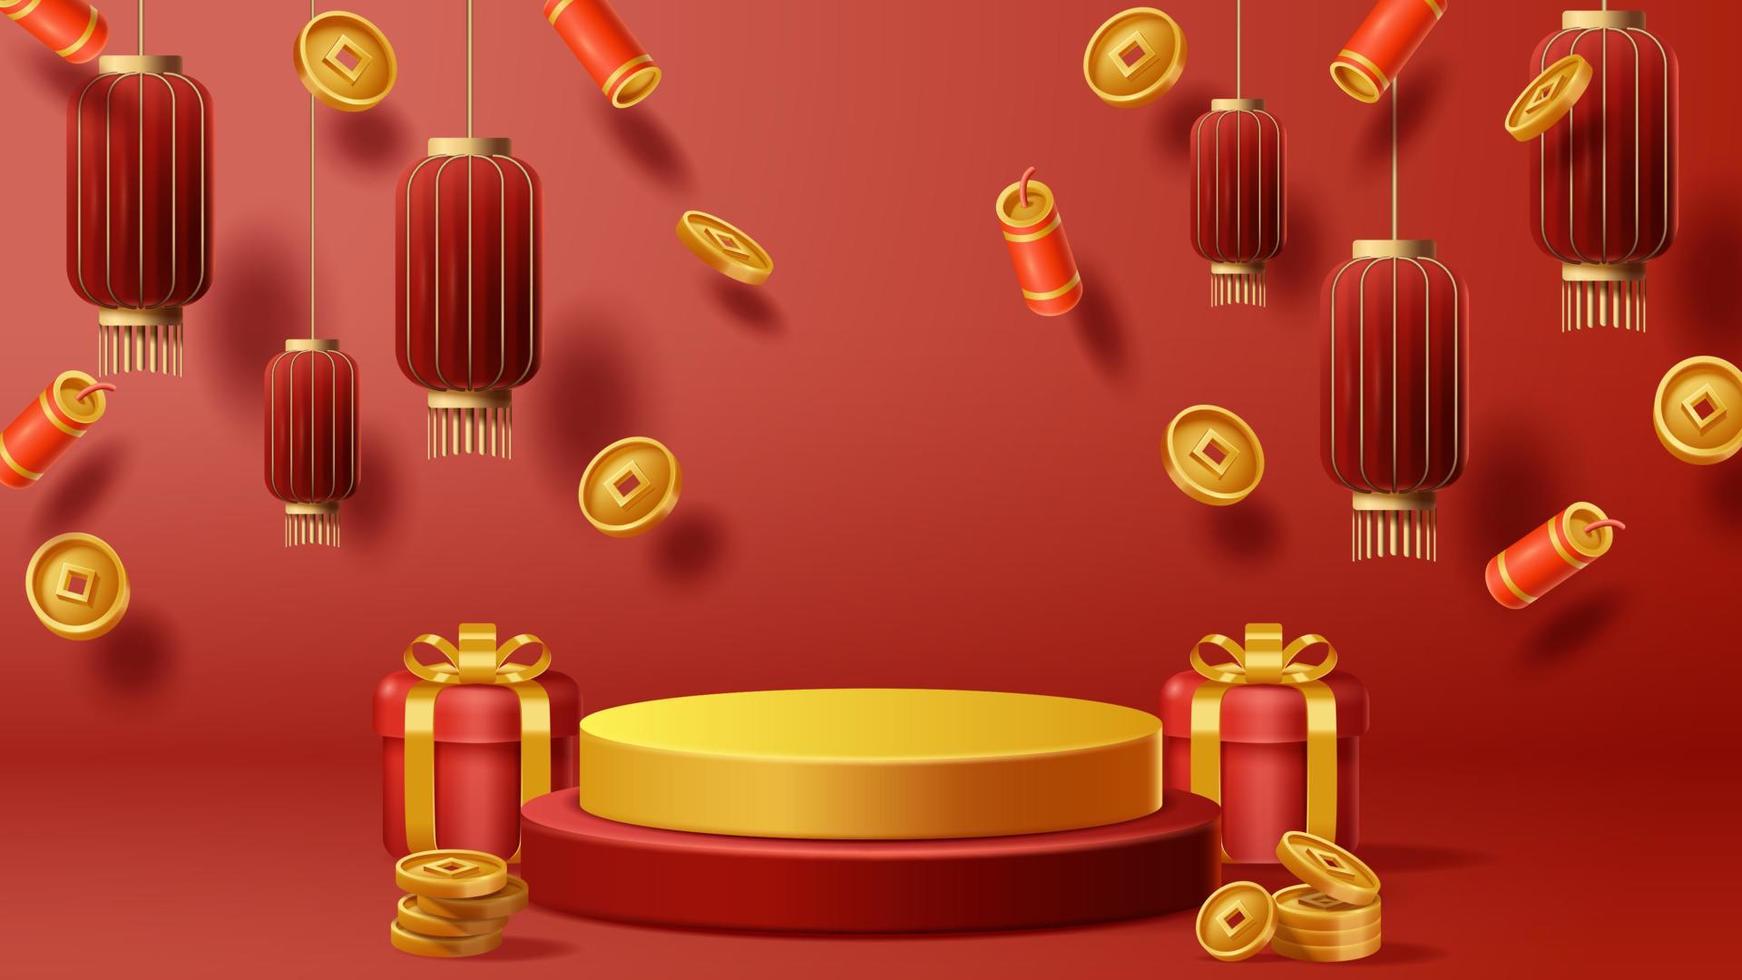 fond de décoration de podium d'affichage du nouvel an chinois avec ornement chinois. vecteur 3d illustration